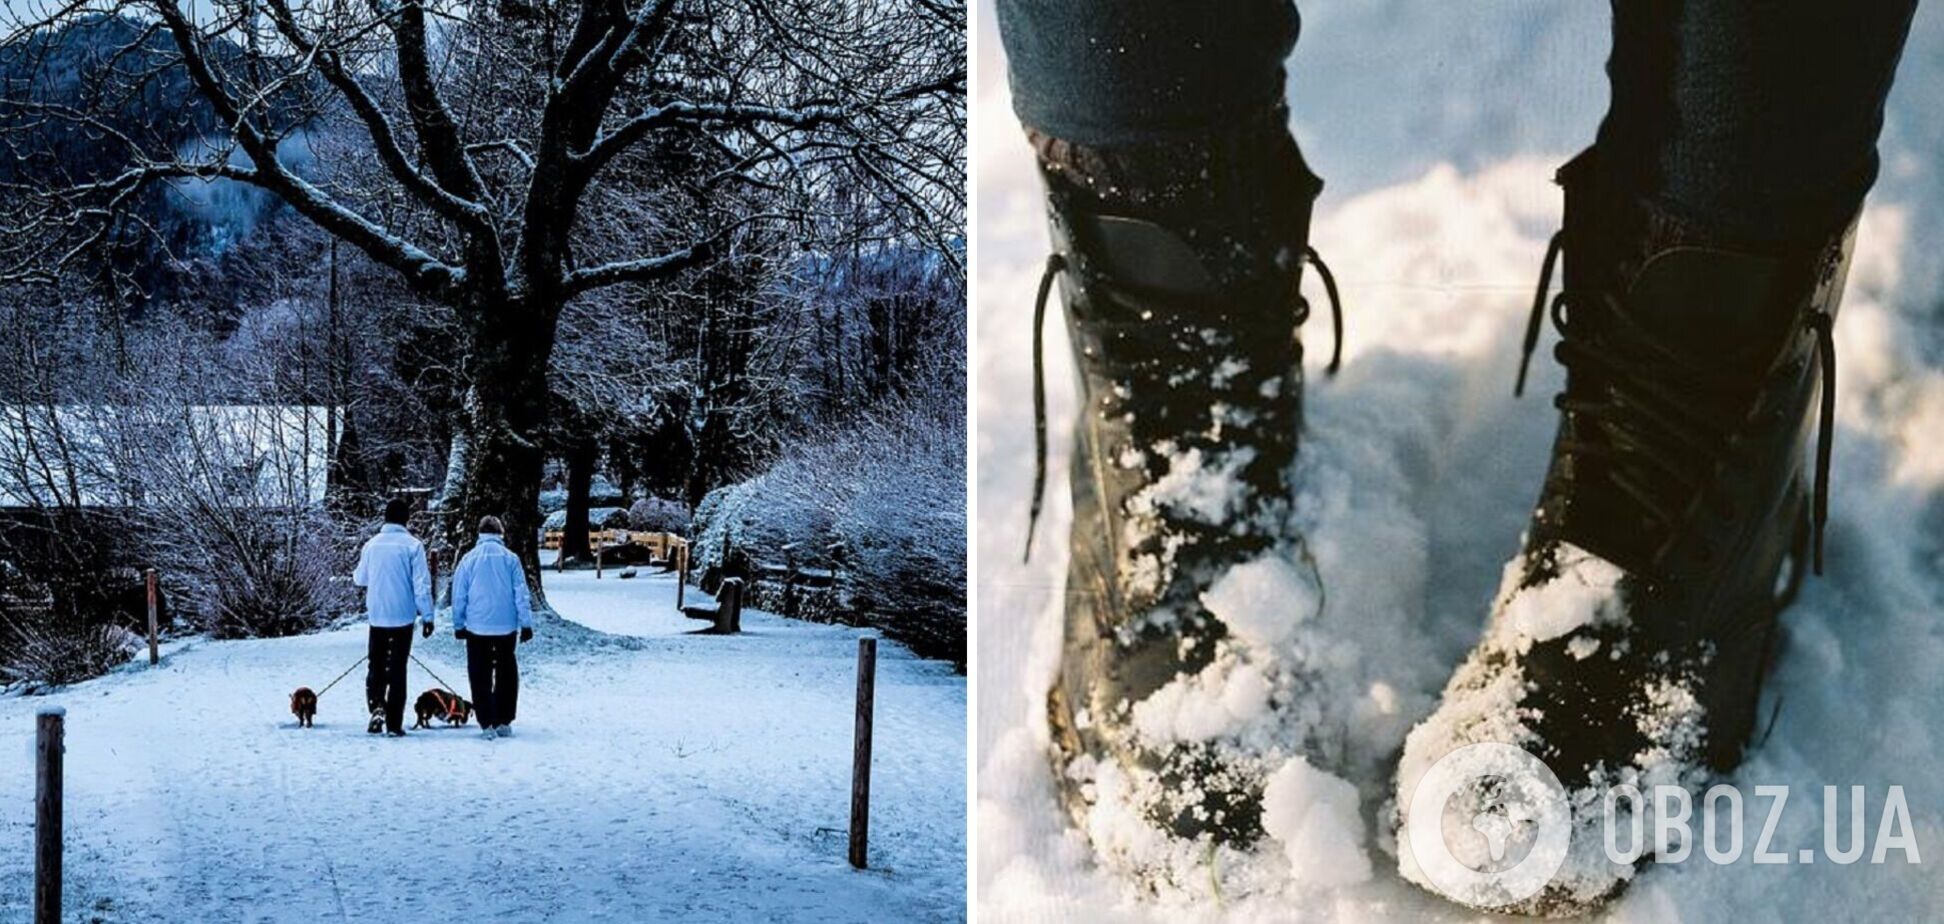 Как согреть ноги на прогулке во время морозов зимой